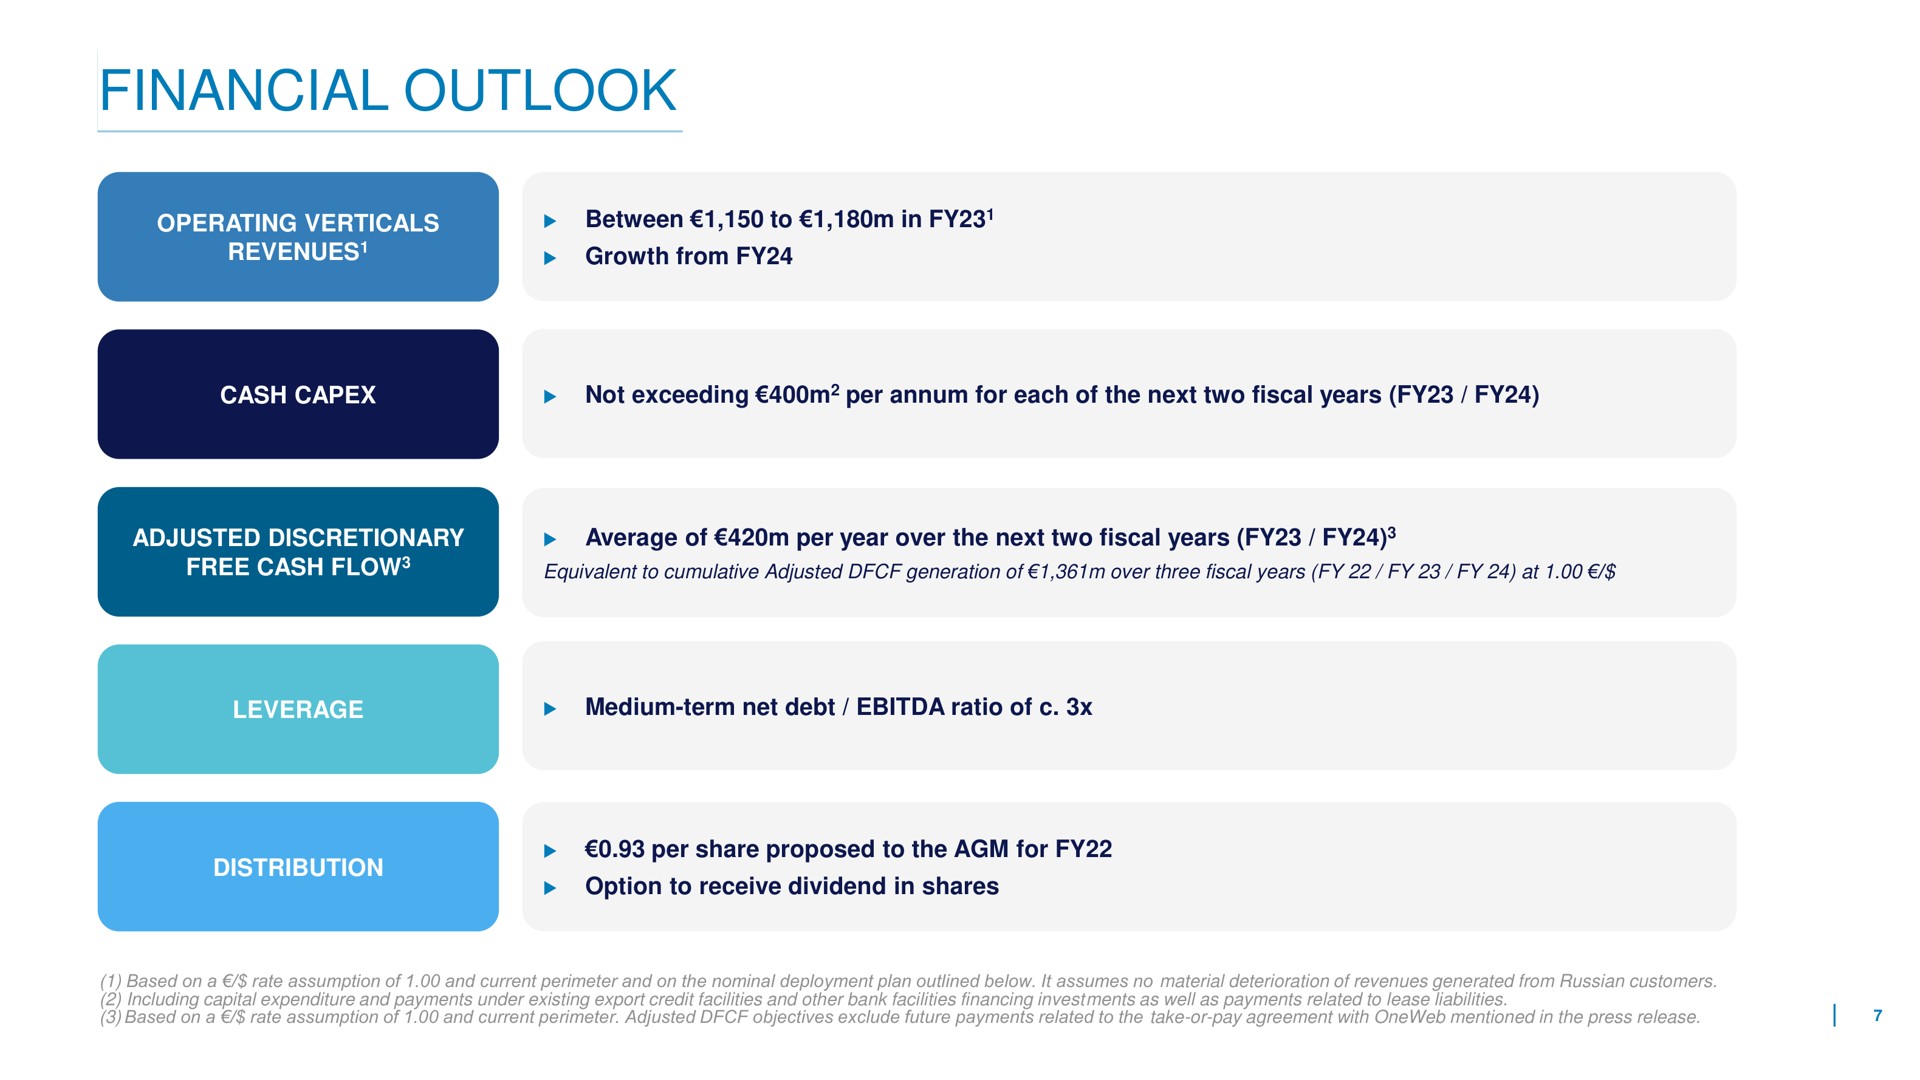 financial outlook | Eutelsat